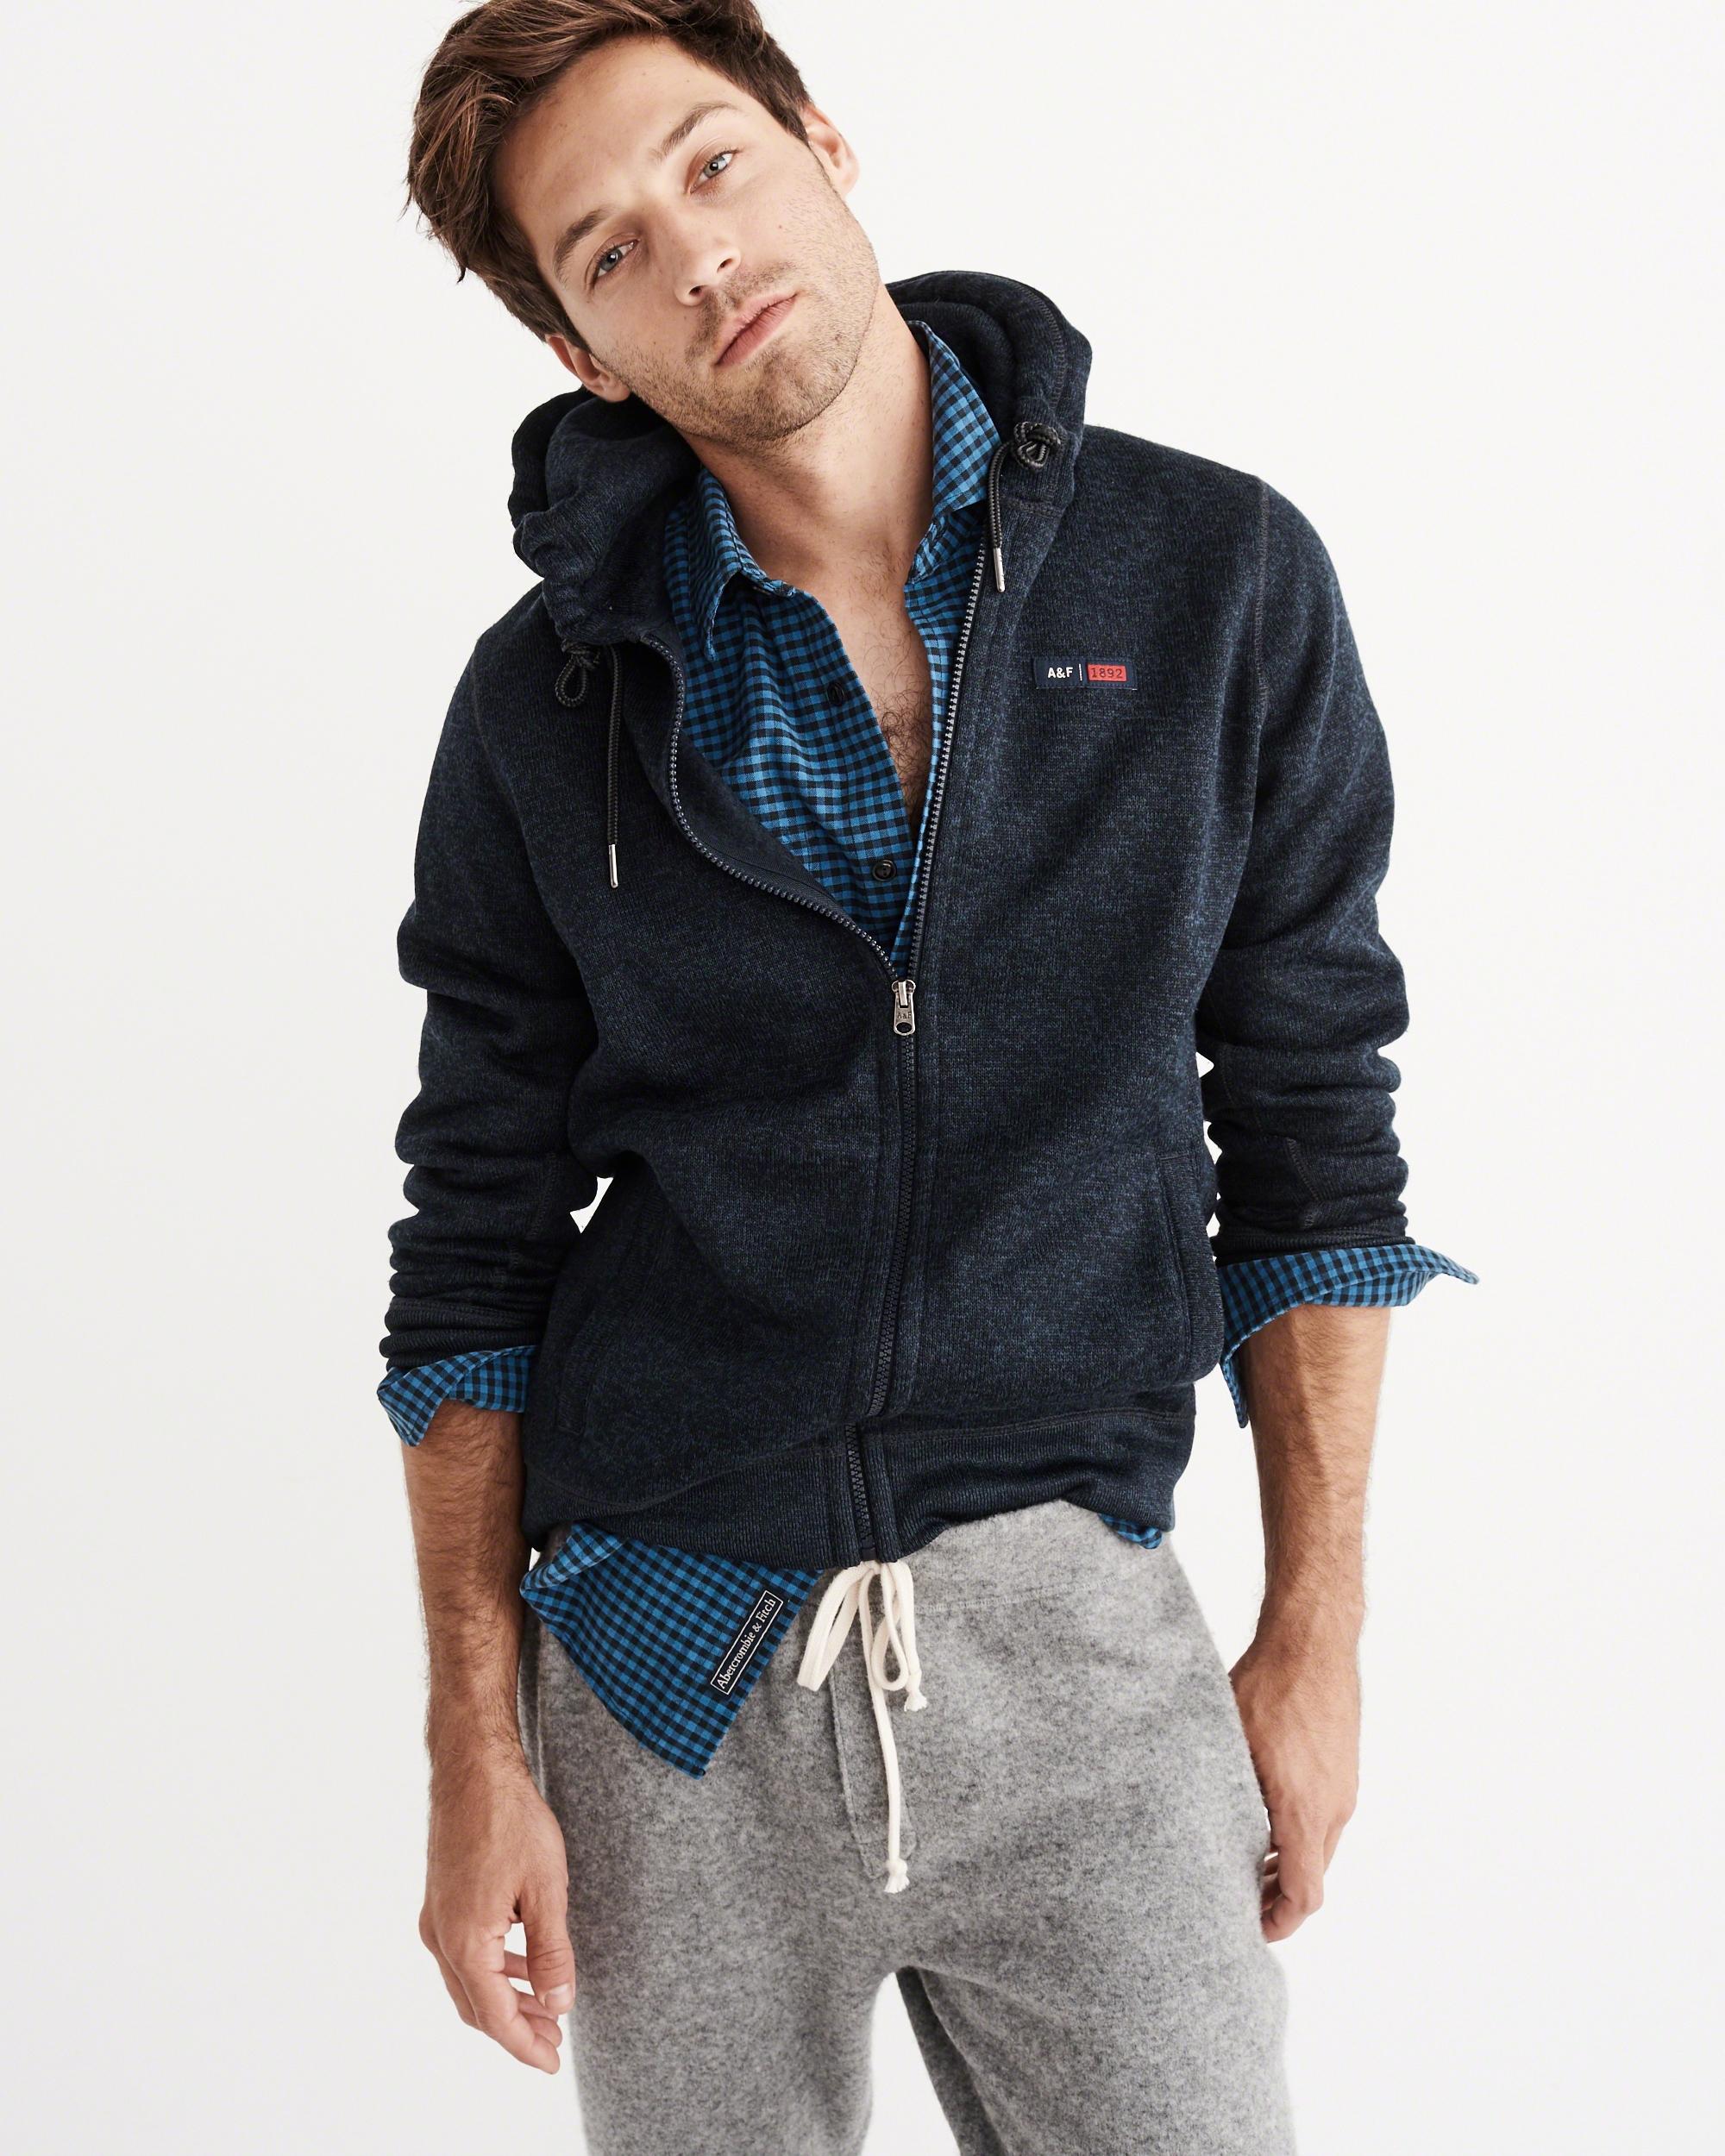 Lyst - Abercrombie & fitch Sweater Fleece Full-zip Hoodie in Blue for Men